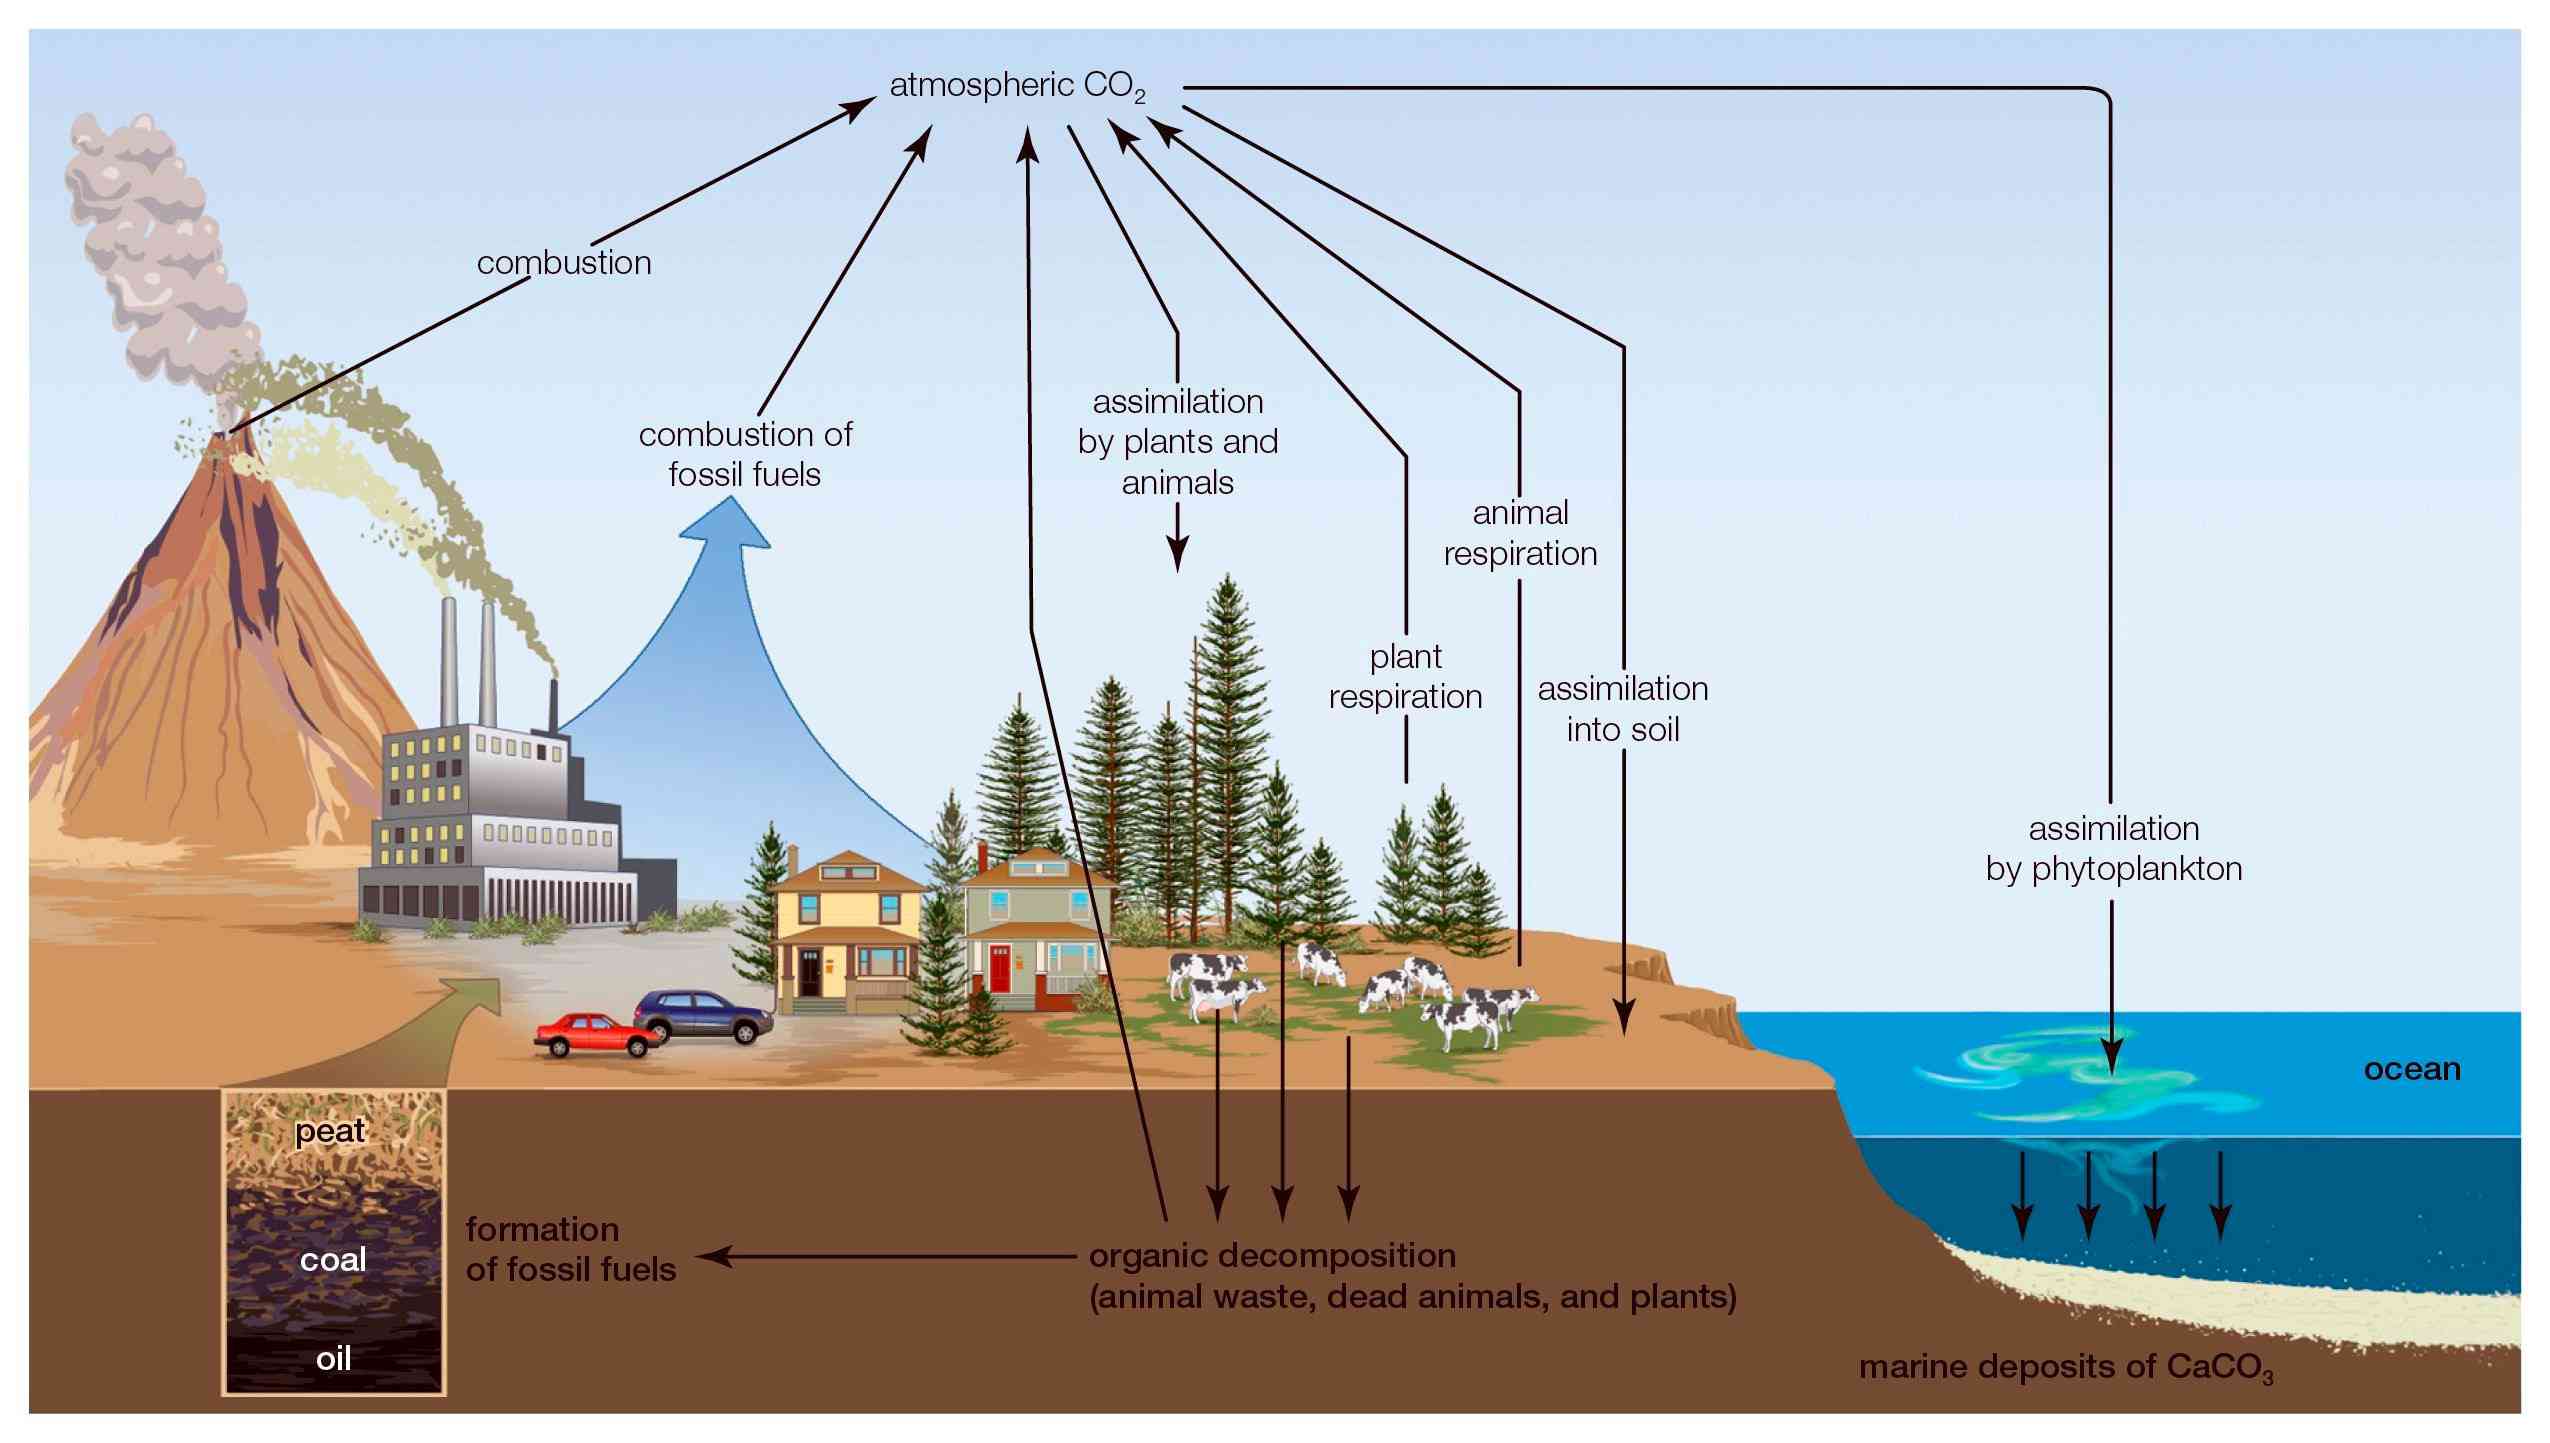 碳循环是指大气中的碳被土壤、植物和海洋所吸收的系统